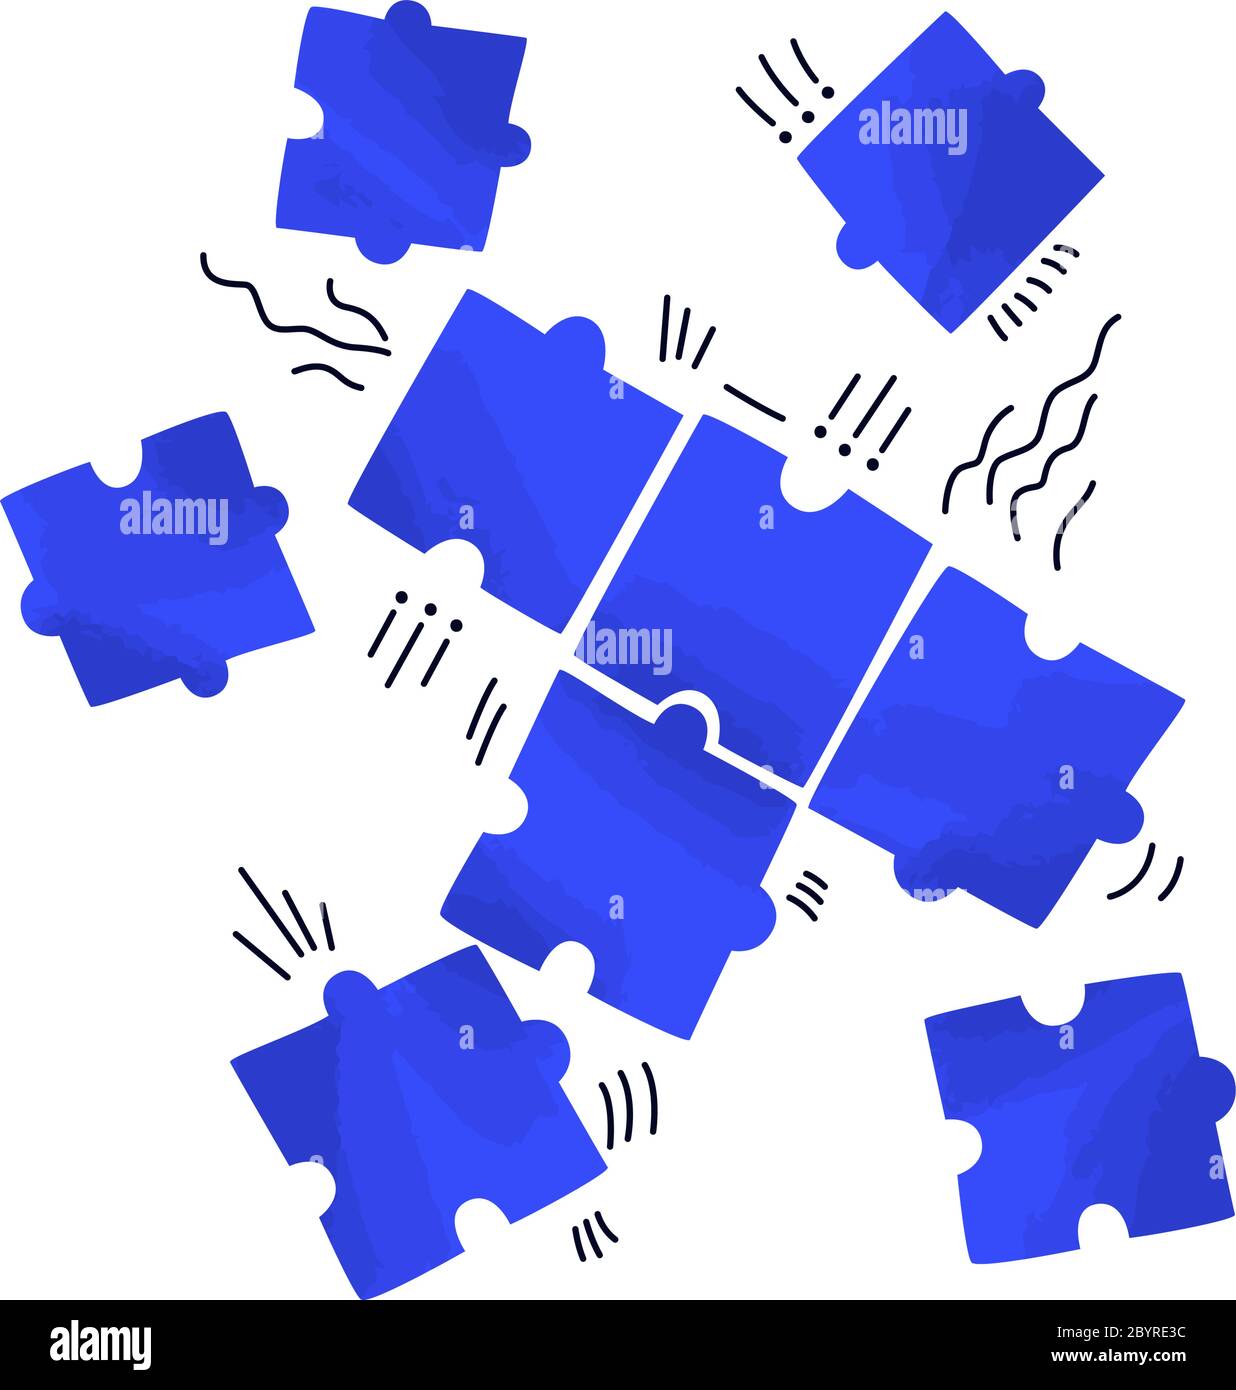 Vektor flache Illustration von mehreren Puzzles, Streuung auf weißem Raum. Problembehebung, Puzzle-Konzept - Teamwork für den geschäftlichen Erfolg Stock Vektor